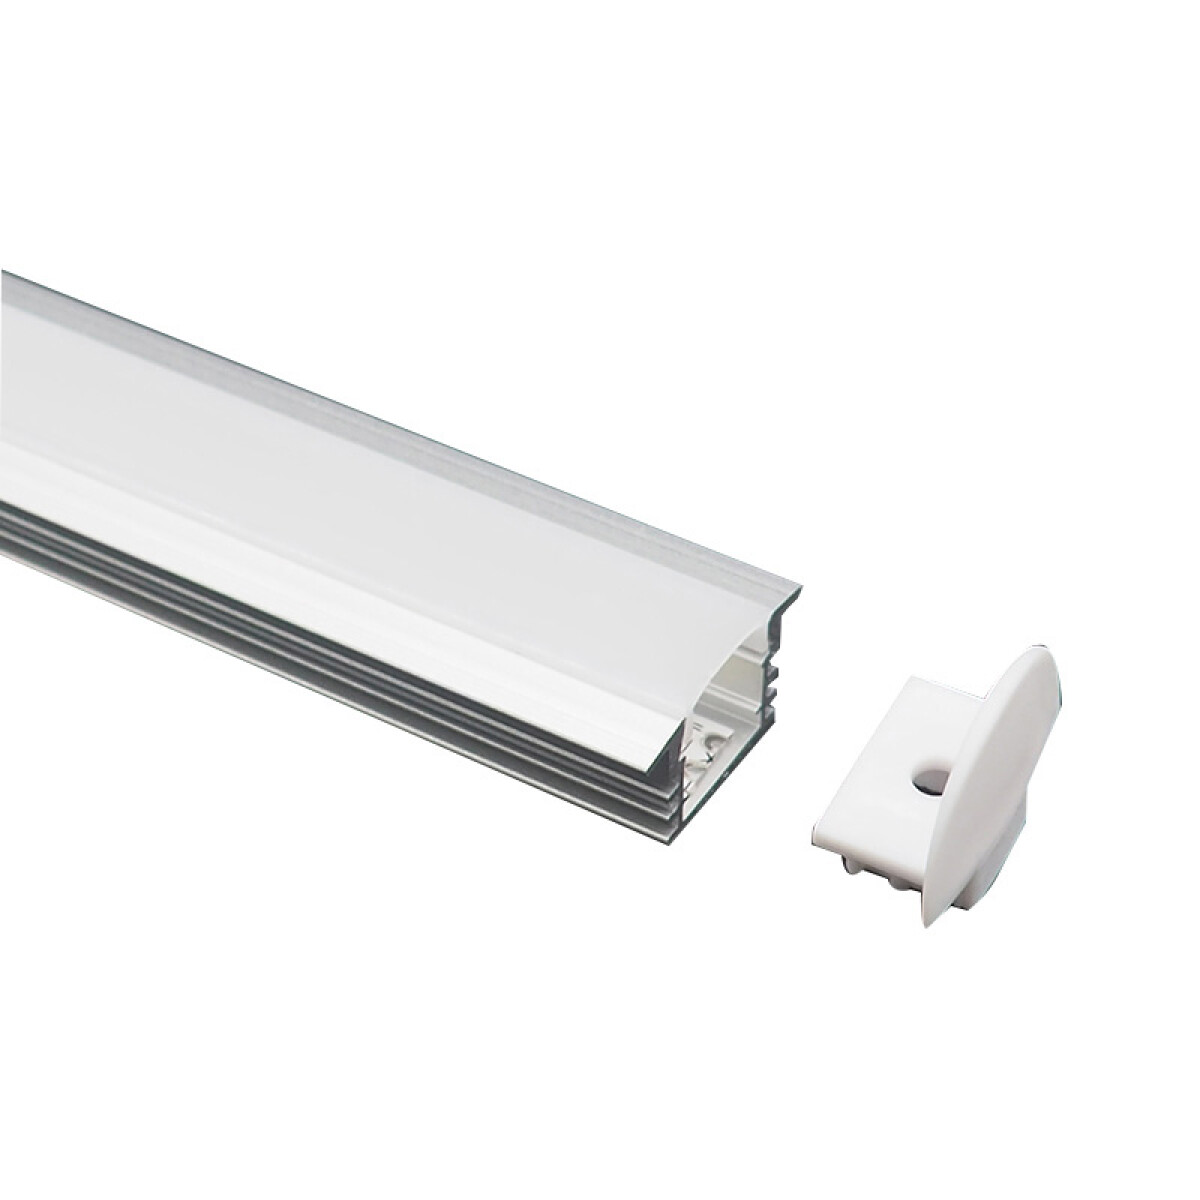 Perfil Aluminio para Cinta LED 12V de Empotrar 